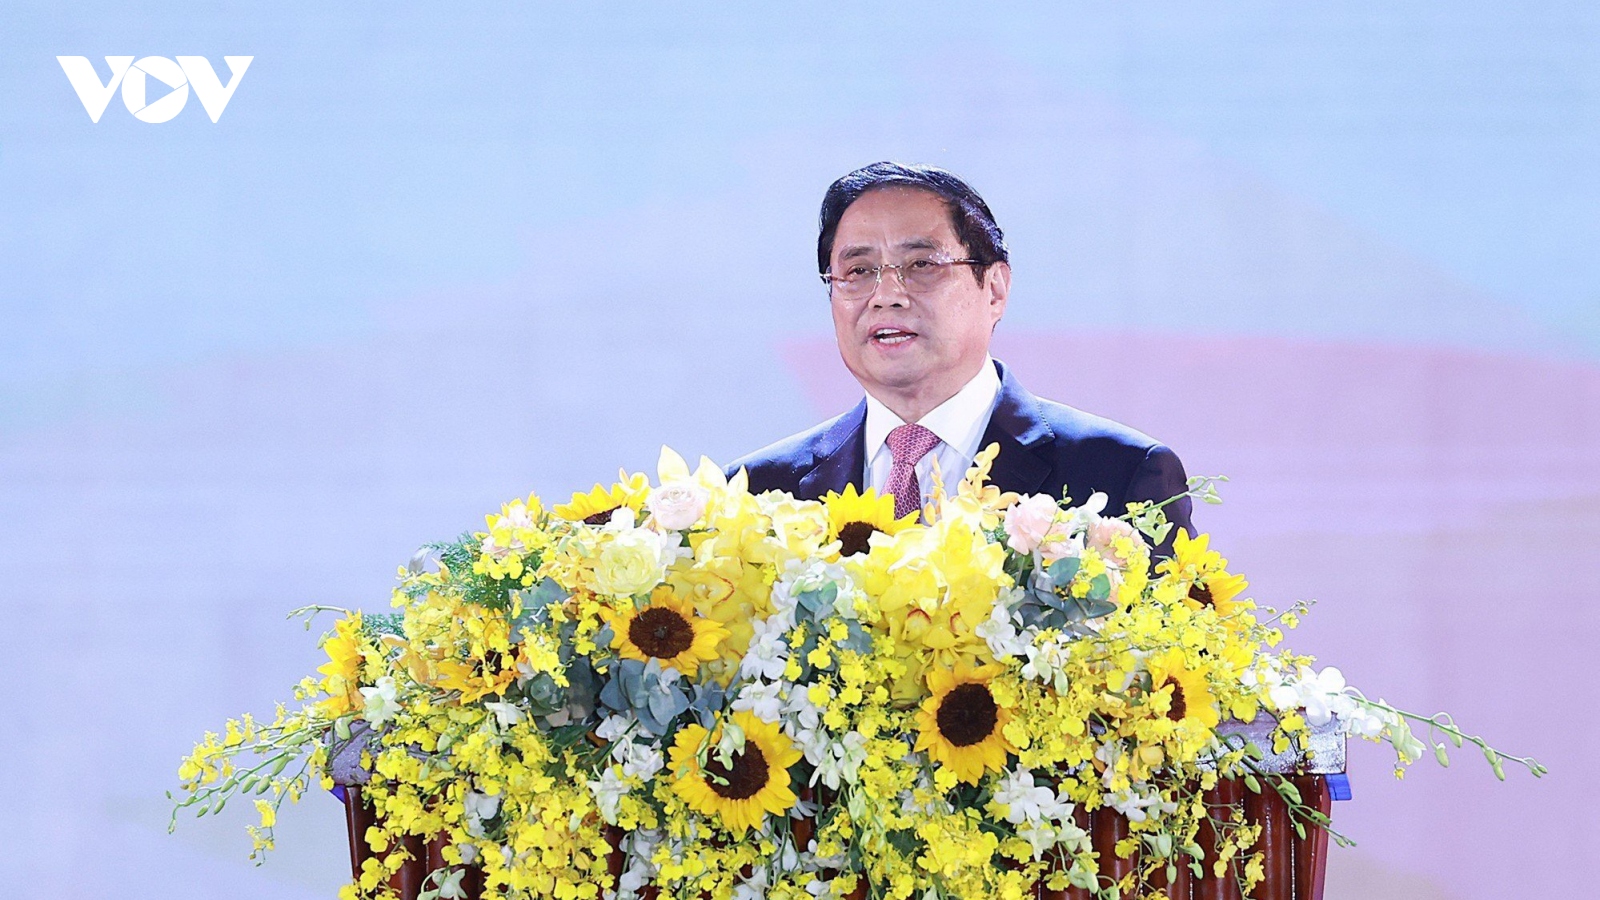 Thủ tướng dự Lễ kỷ niệm 370 năm xây dựng và phát triển tỉnh Khánh Hòa